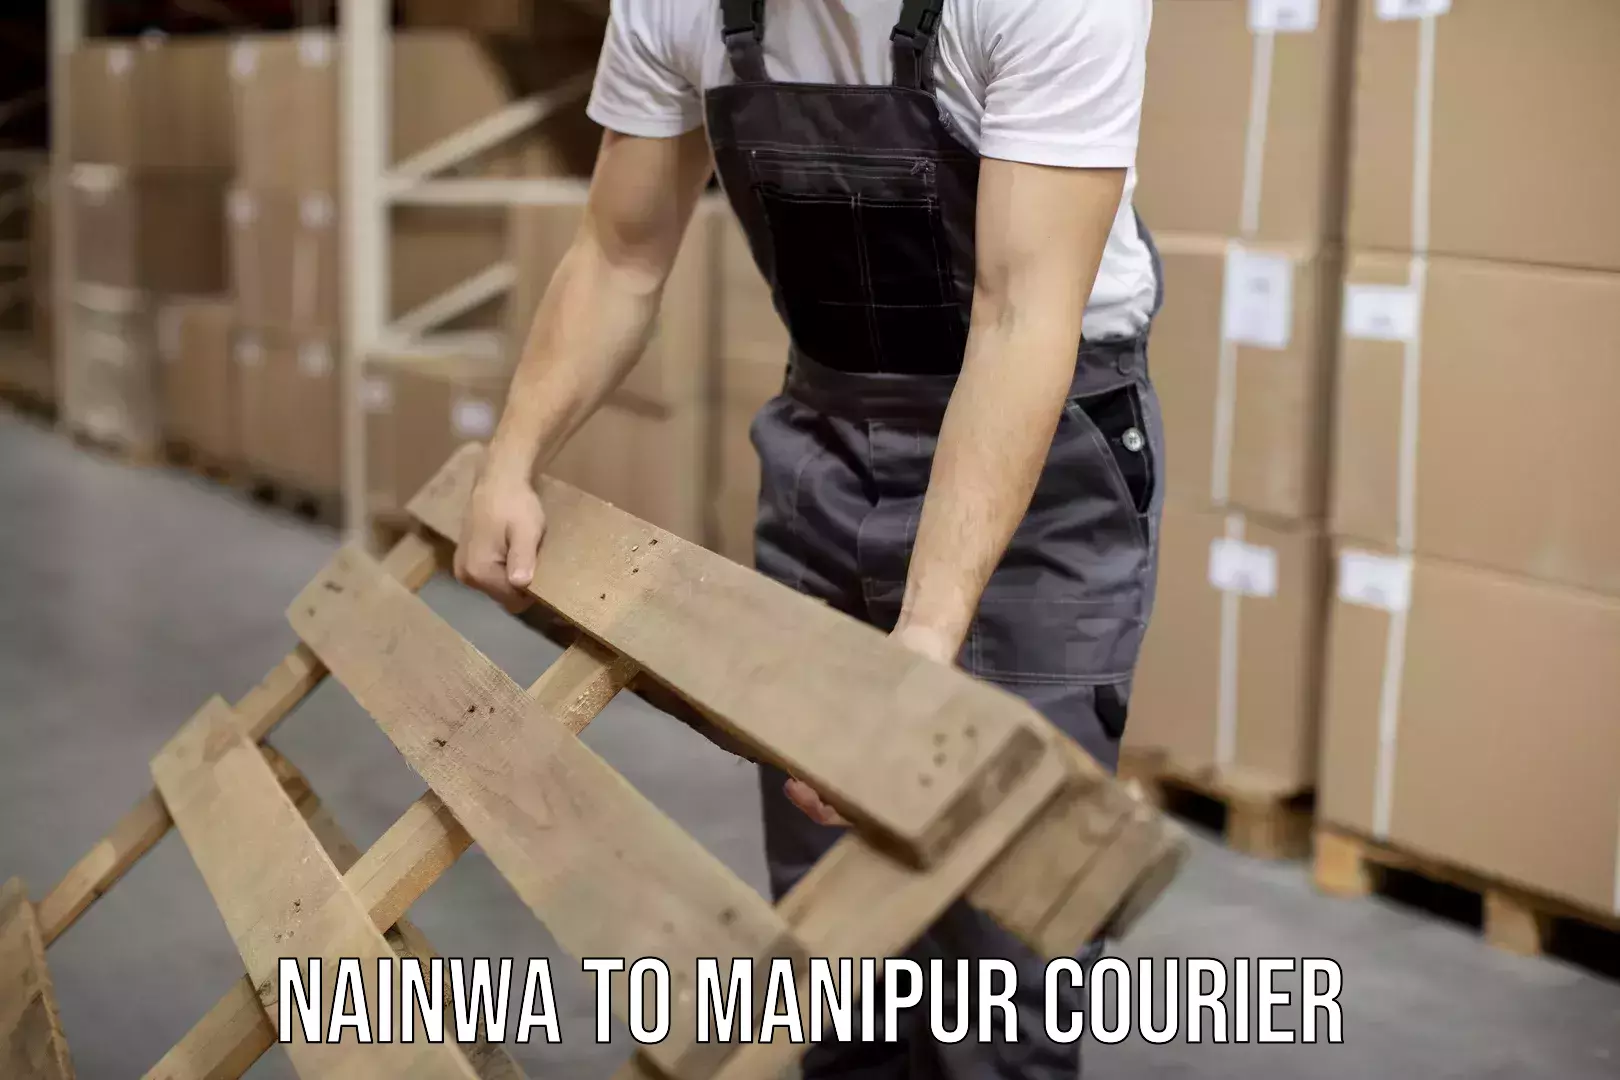 User-friendly courier app Nainwa to Moirang